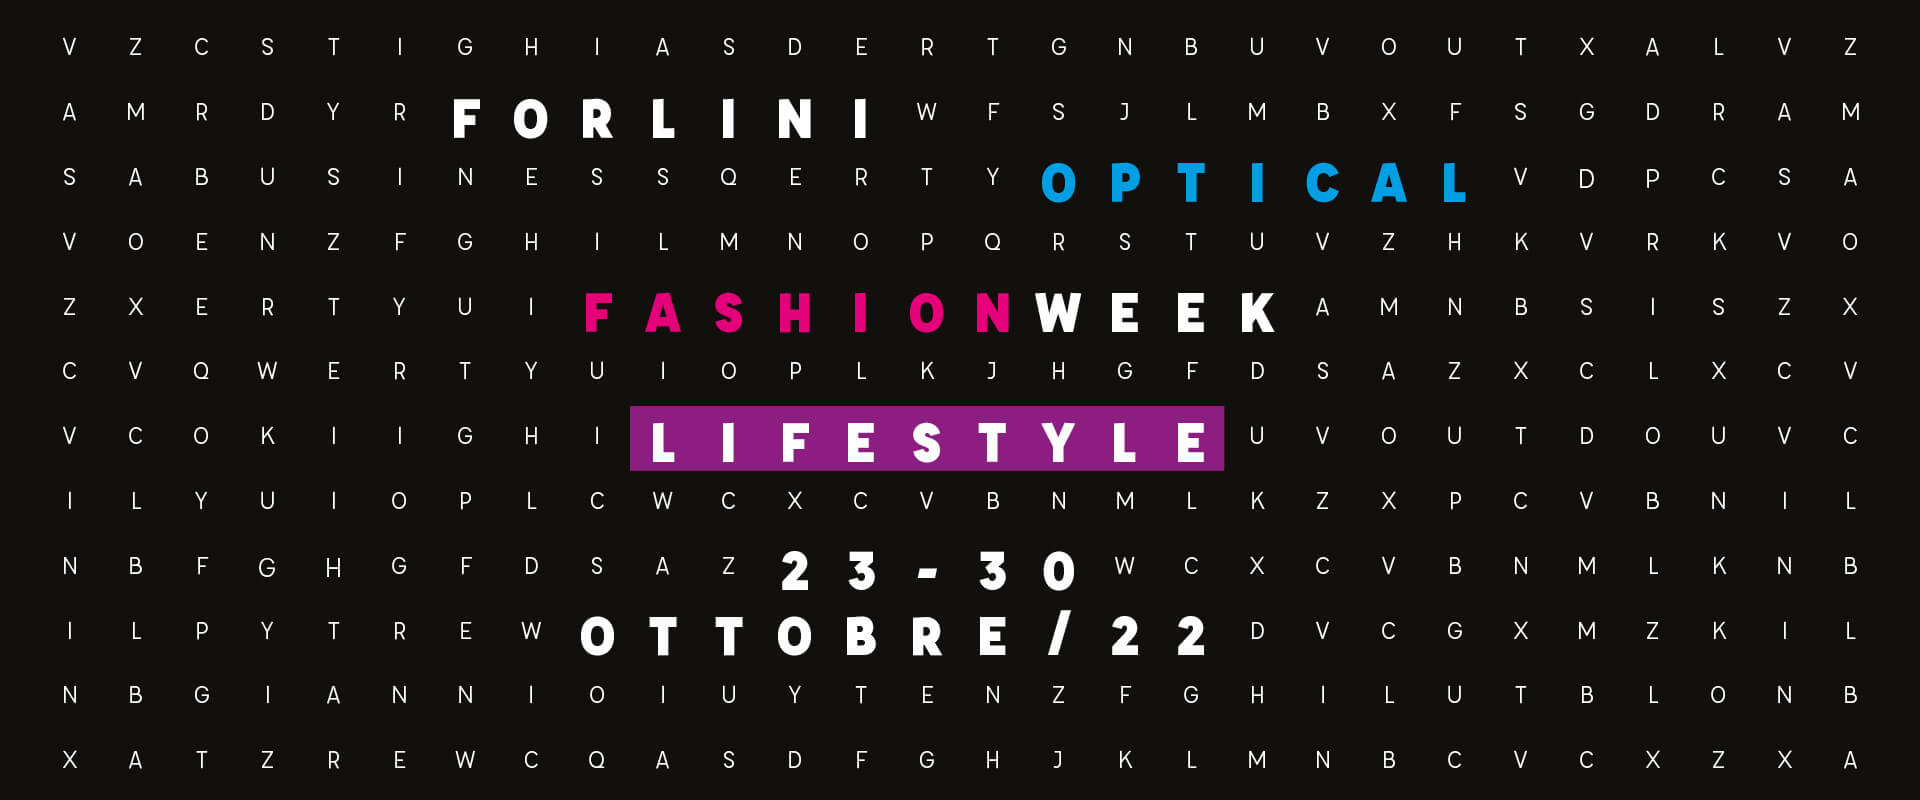 Forlini Optical Fashion Week AW 2022